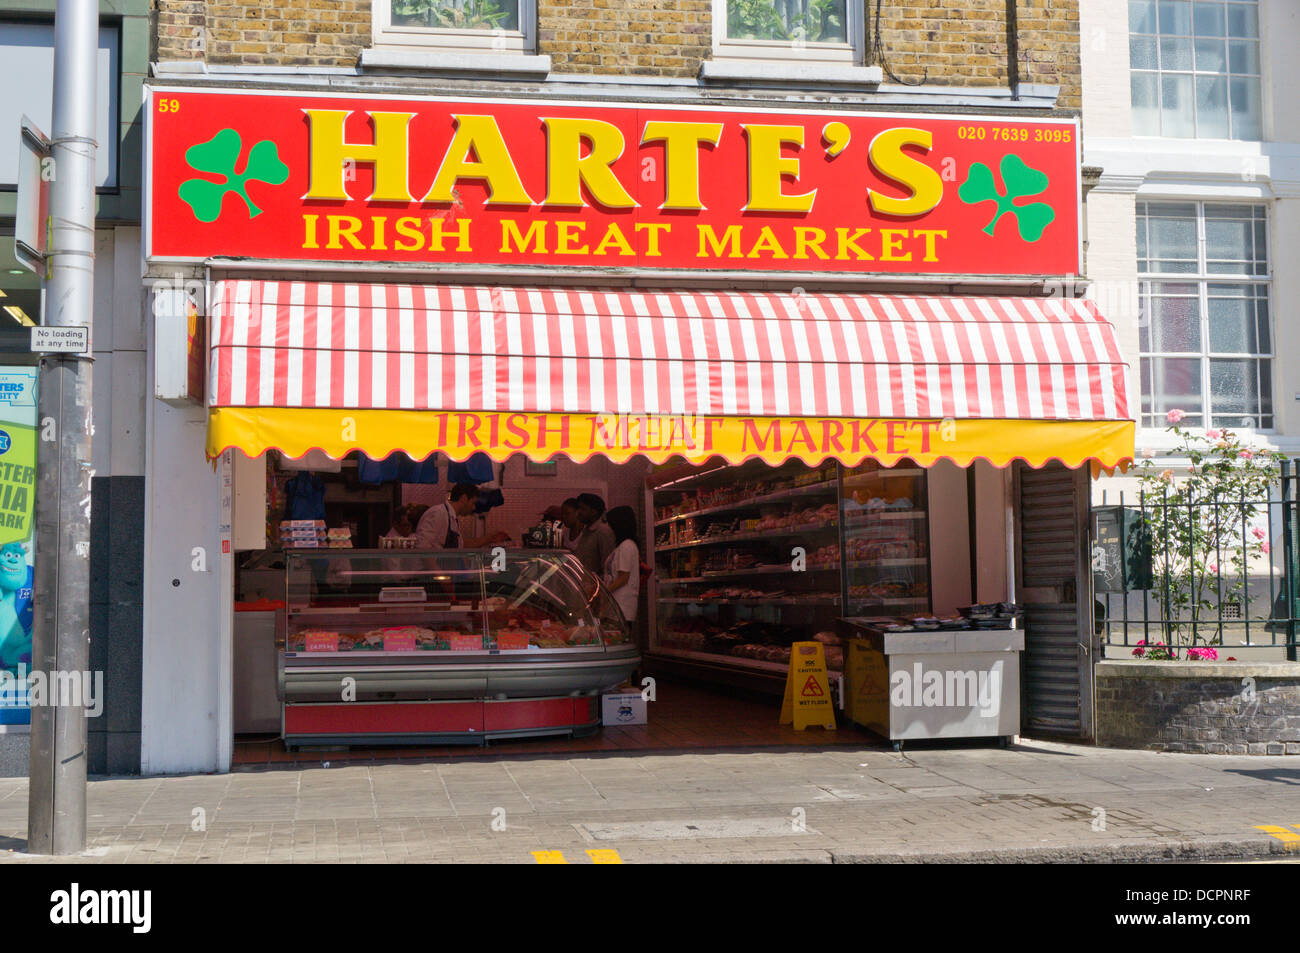 Harte's Irish Meat Market shop à Peckham, dans le sud de Londres. Banque D'Images